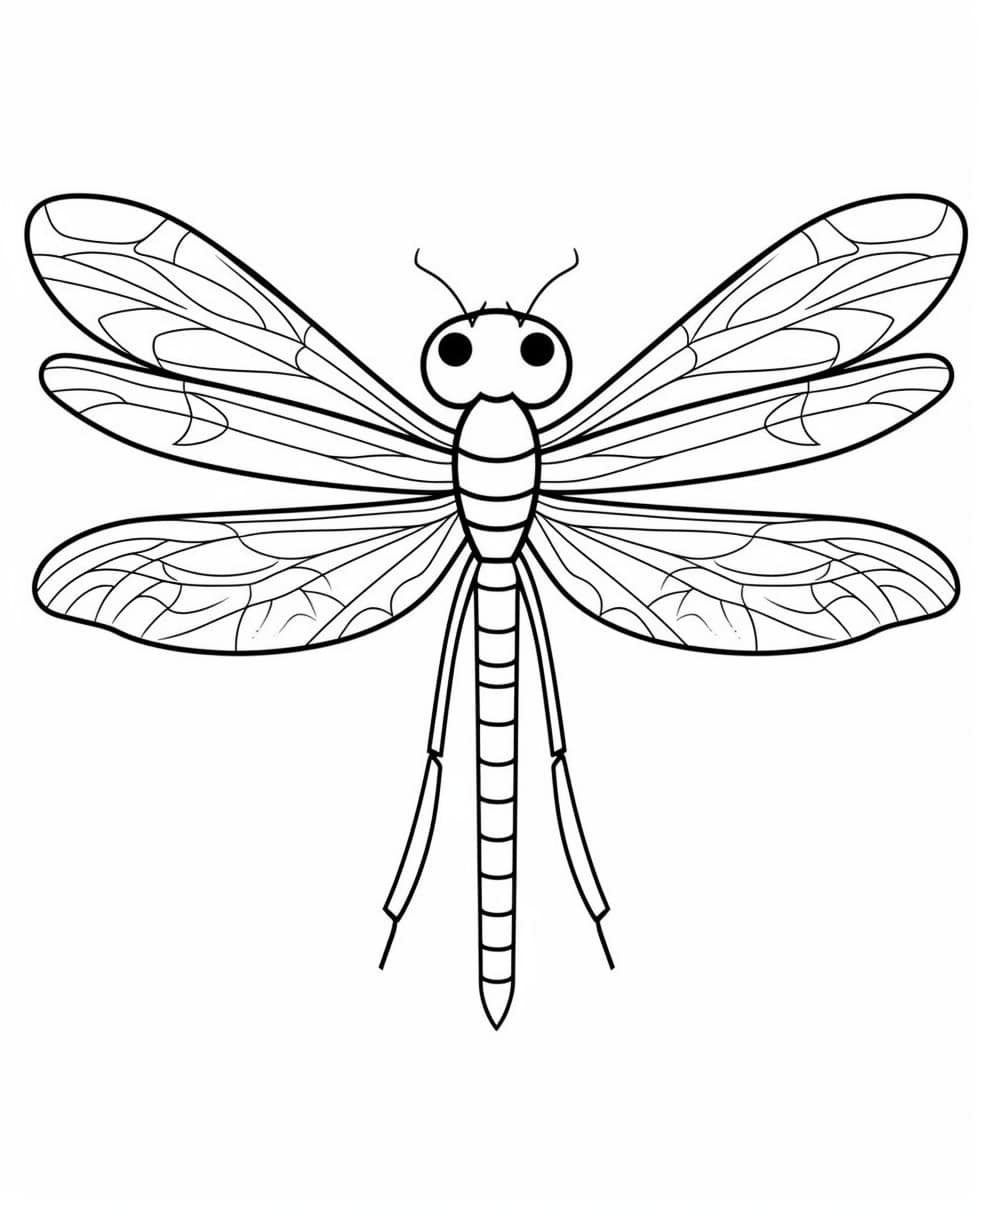 Dragonfly coloring sheets (free & printable) | Kokoprint.com